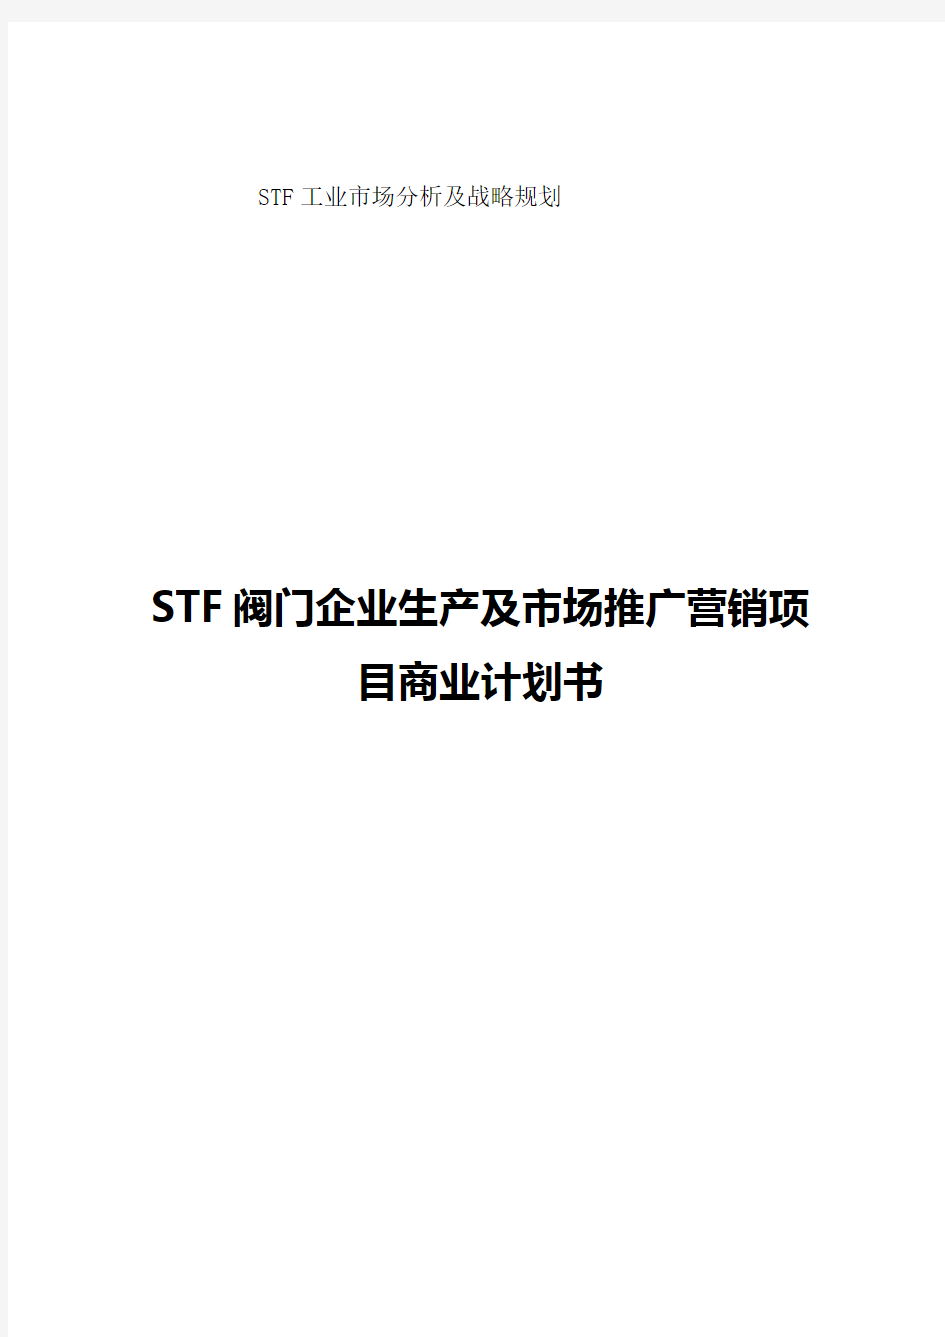 【精编审定稿】STF阀门企业生产及市场推广营销项目商业计划书